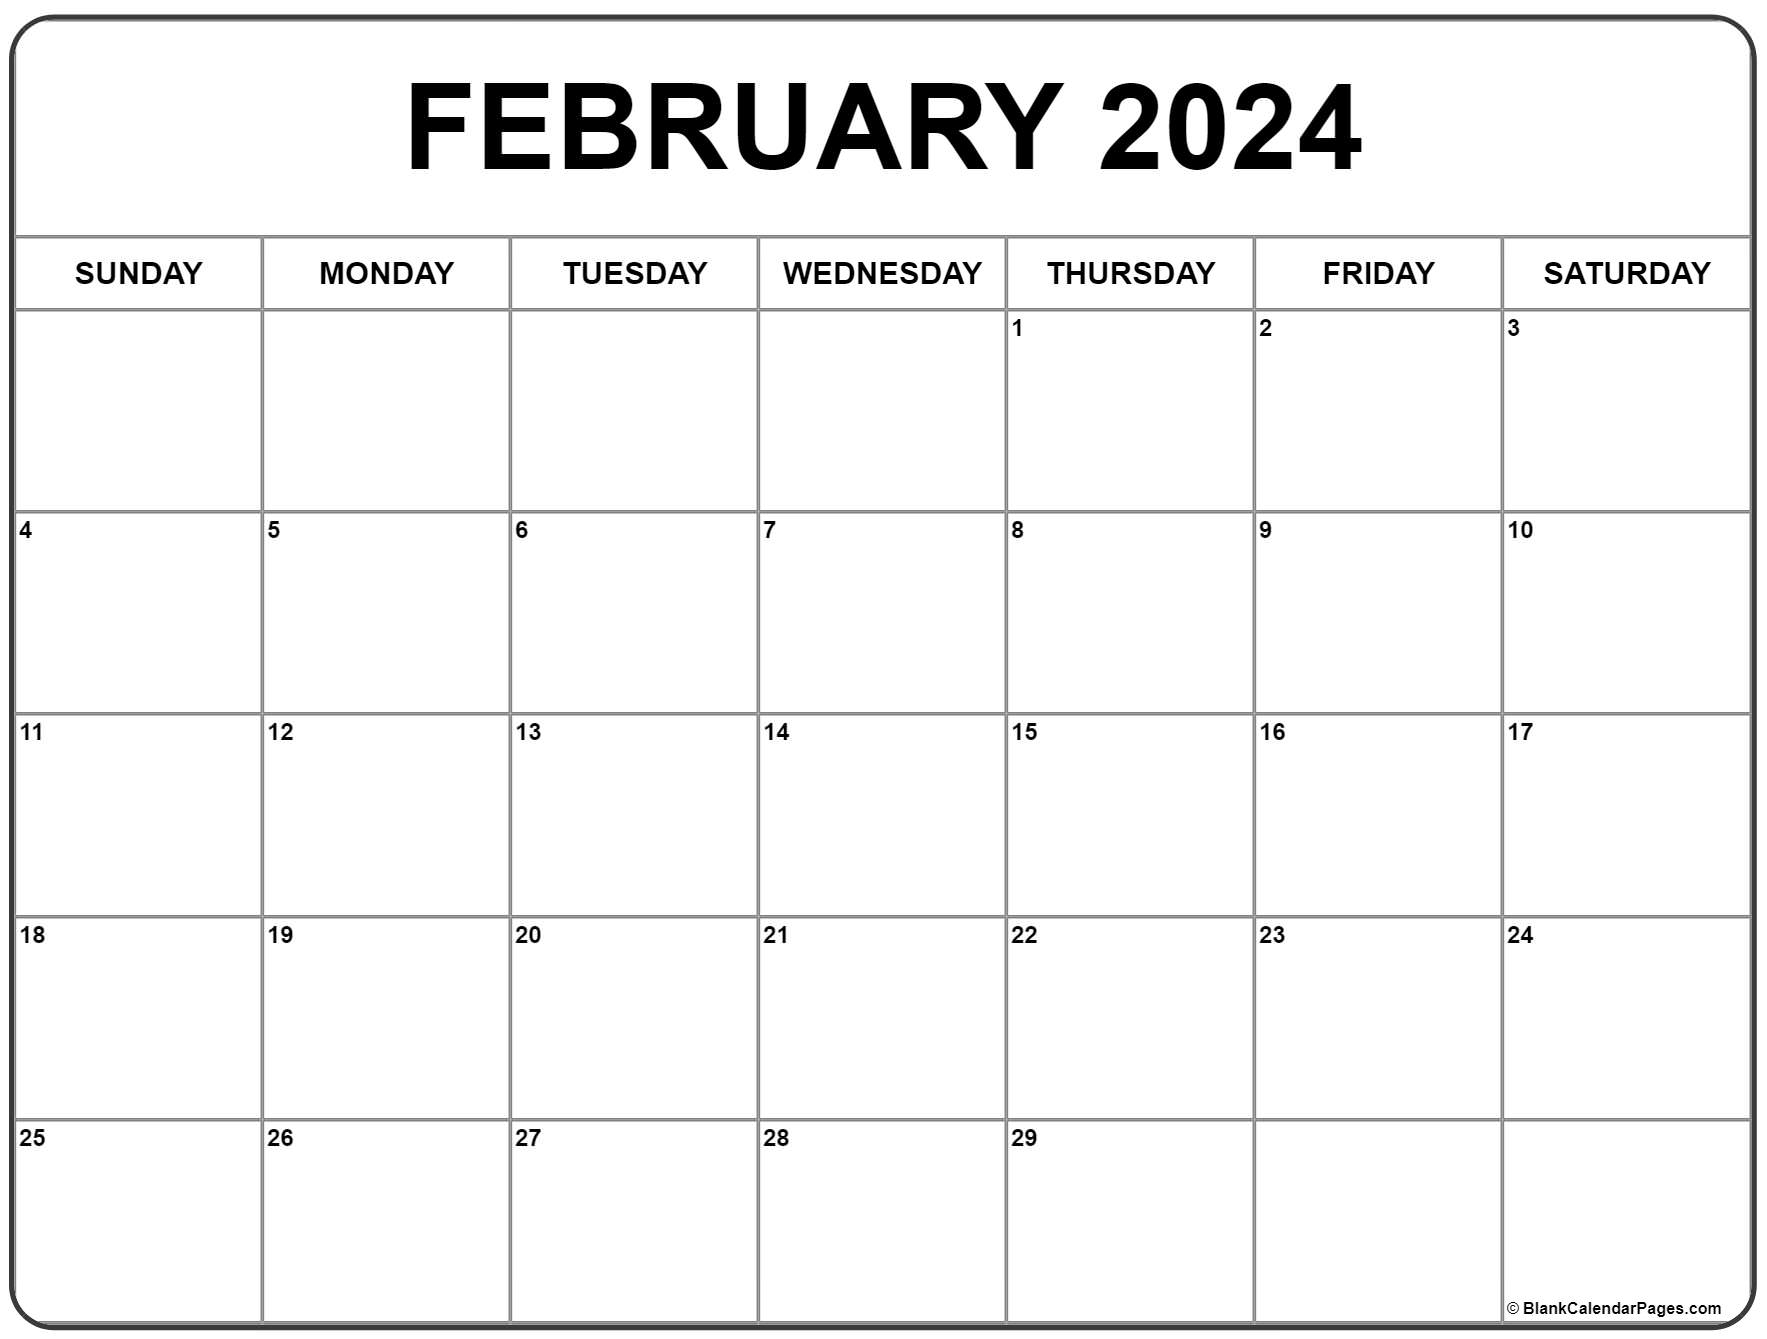 February 2024 Calendar | Free Printable Calendar for Calendar 2024 February Printable